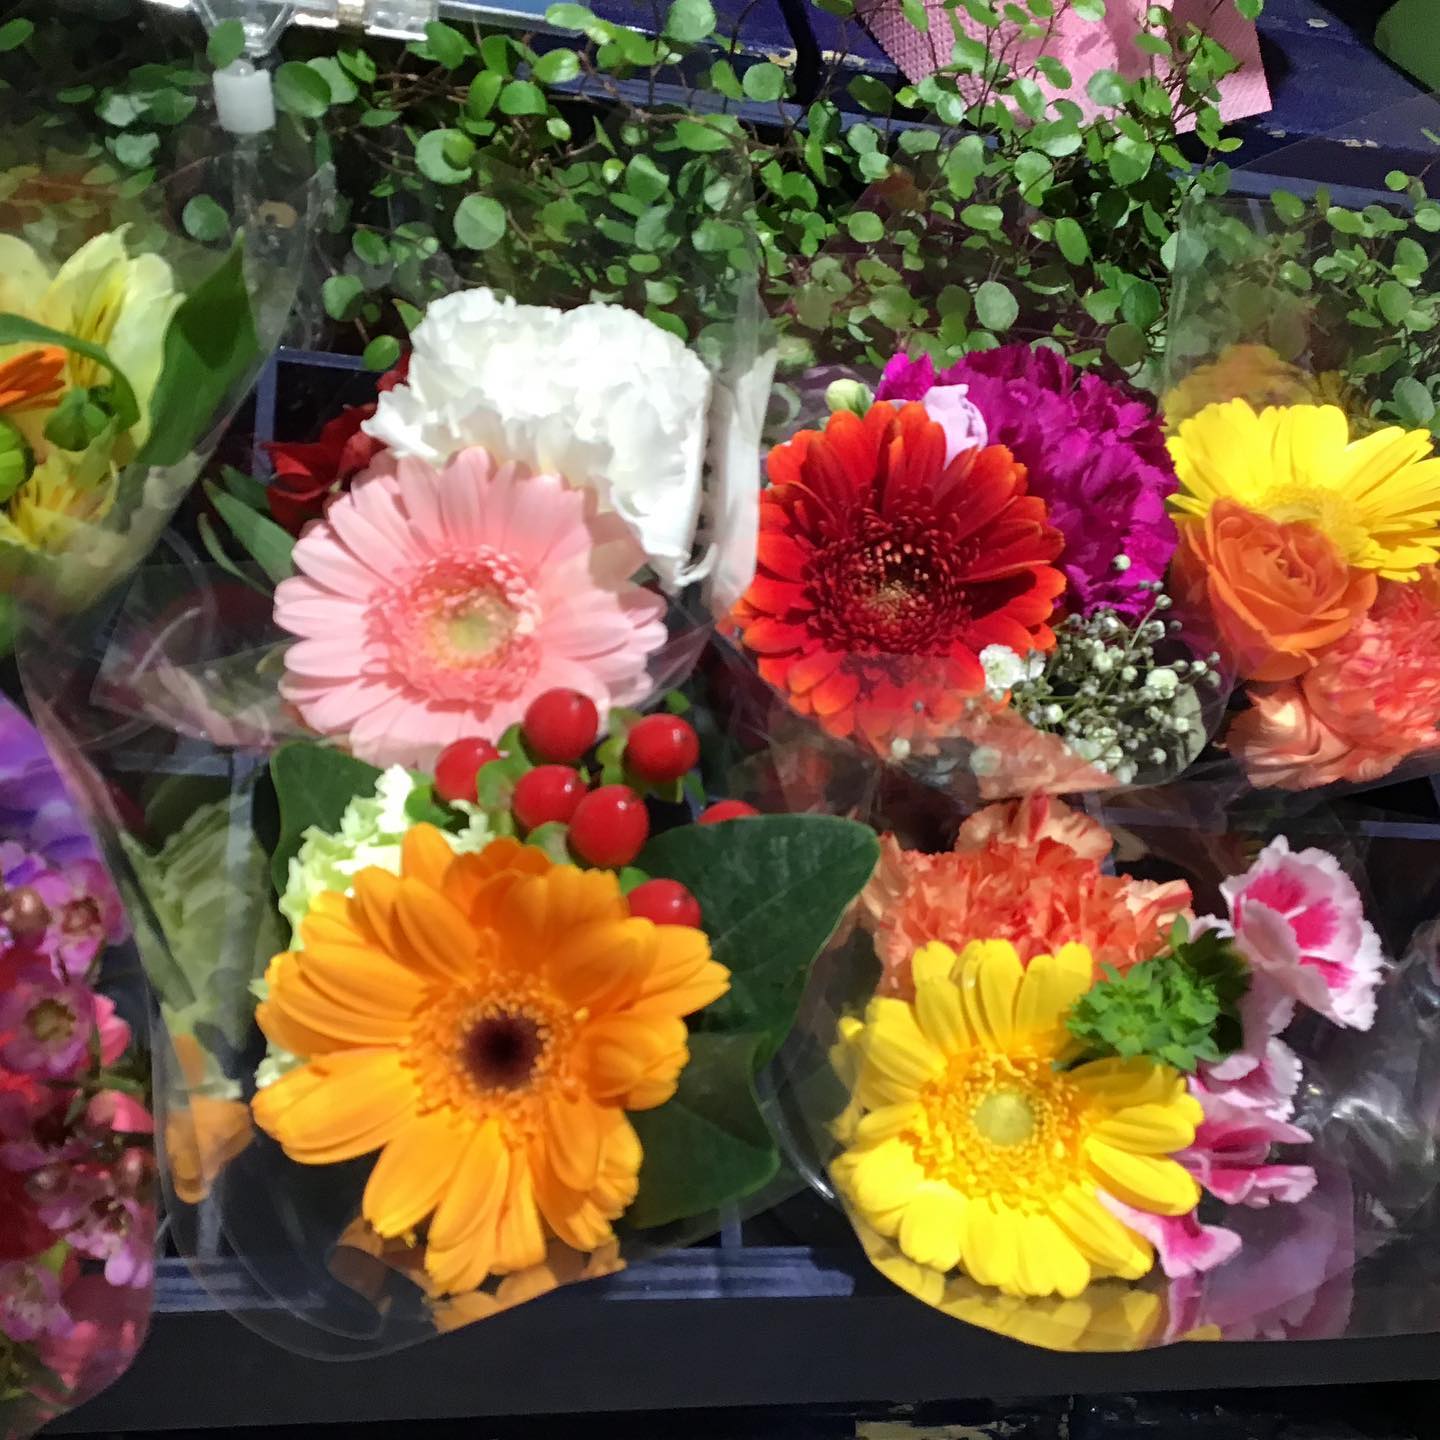 モンソーフルールアトレ川崎店です。

今日はあいにくのお天気でしたね。
こんな日は、お部屋にお花を飾られてはいかがでしょうか？

カラフルなミニブーケ 人気です！

ちょっと飾るだけで、お部屋が明るくなりますよ。

ご来店お待ちしております。

お気軽にお問い合わせください
.
モンソーフルールアトレ川崎店
★★★★★★★★★★★
〒210-0007
神奈川県川崎市川崎区駅前本町26-1
アトレ川崎1F
TEL &FAX044-200-6701
営業時間:10:00〜21:00
★★★★★★★★★★★
.